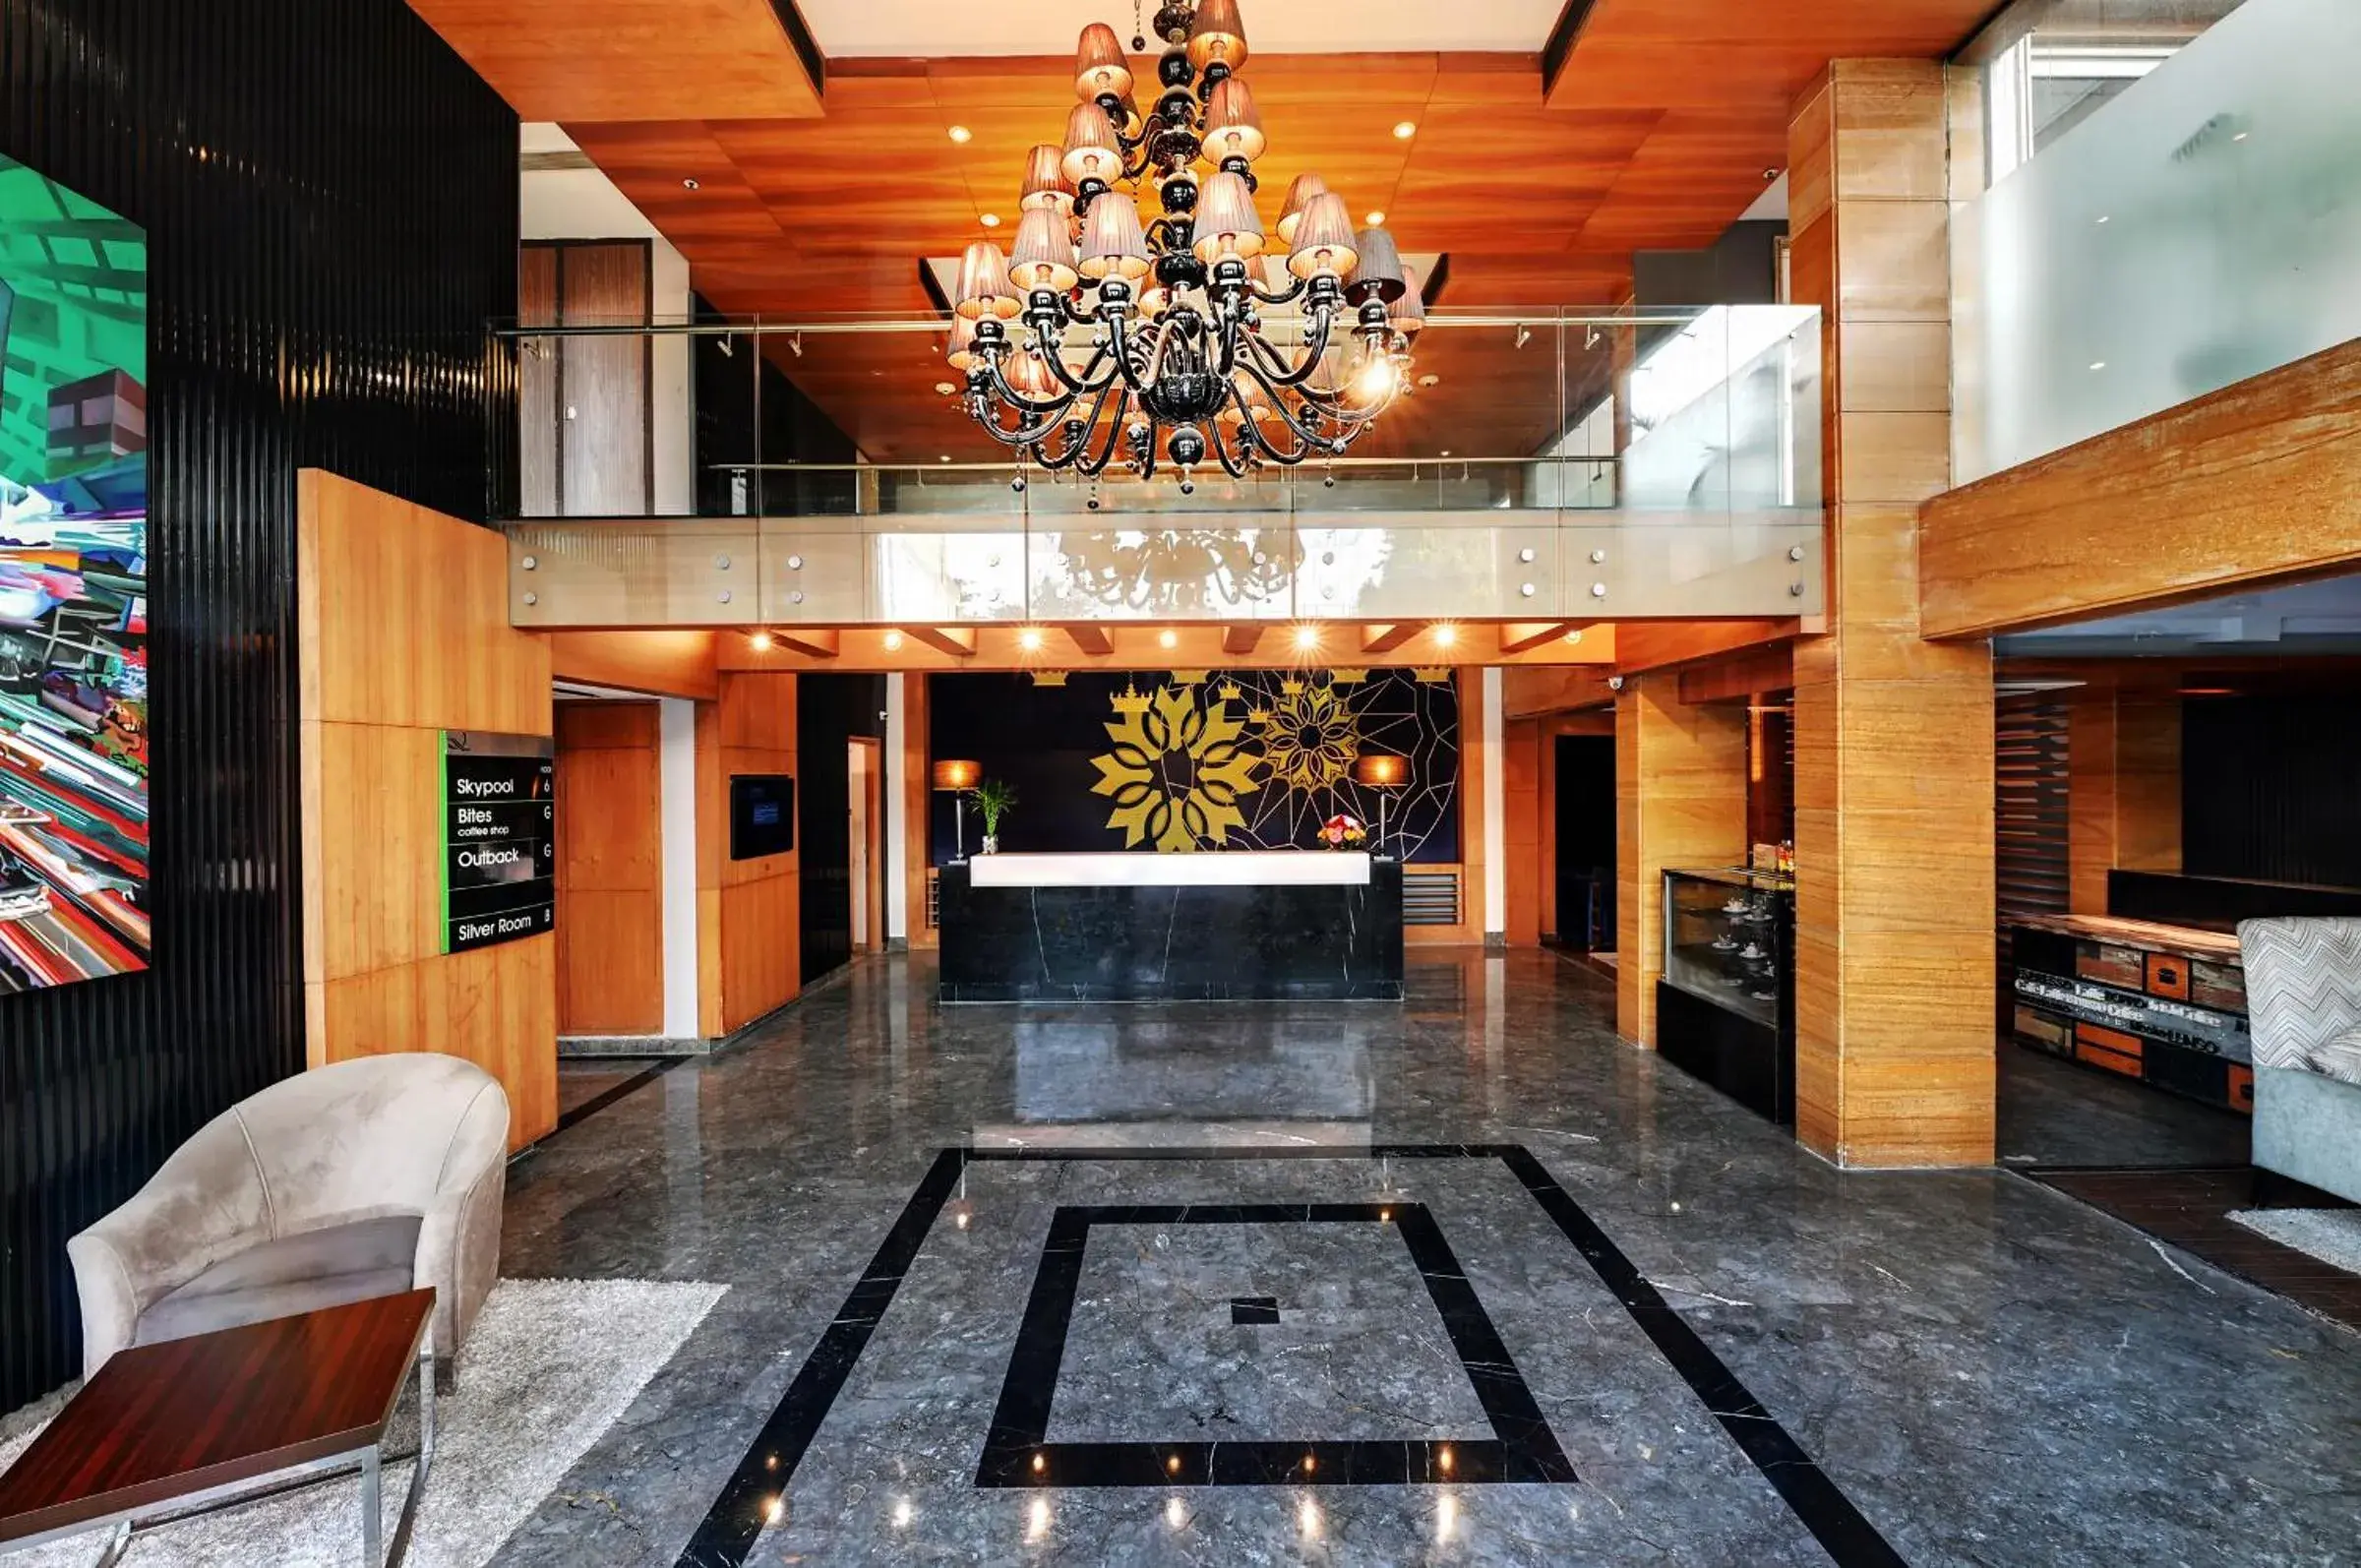 Lobby or reception, Lobby/Reception in Quality Inn Gurgaon